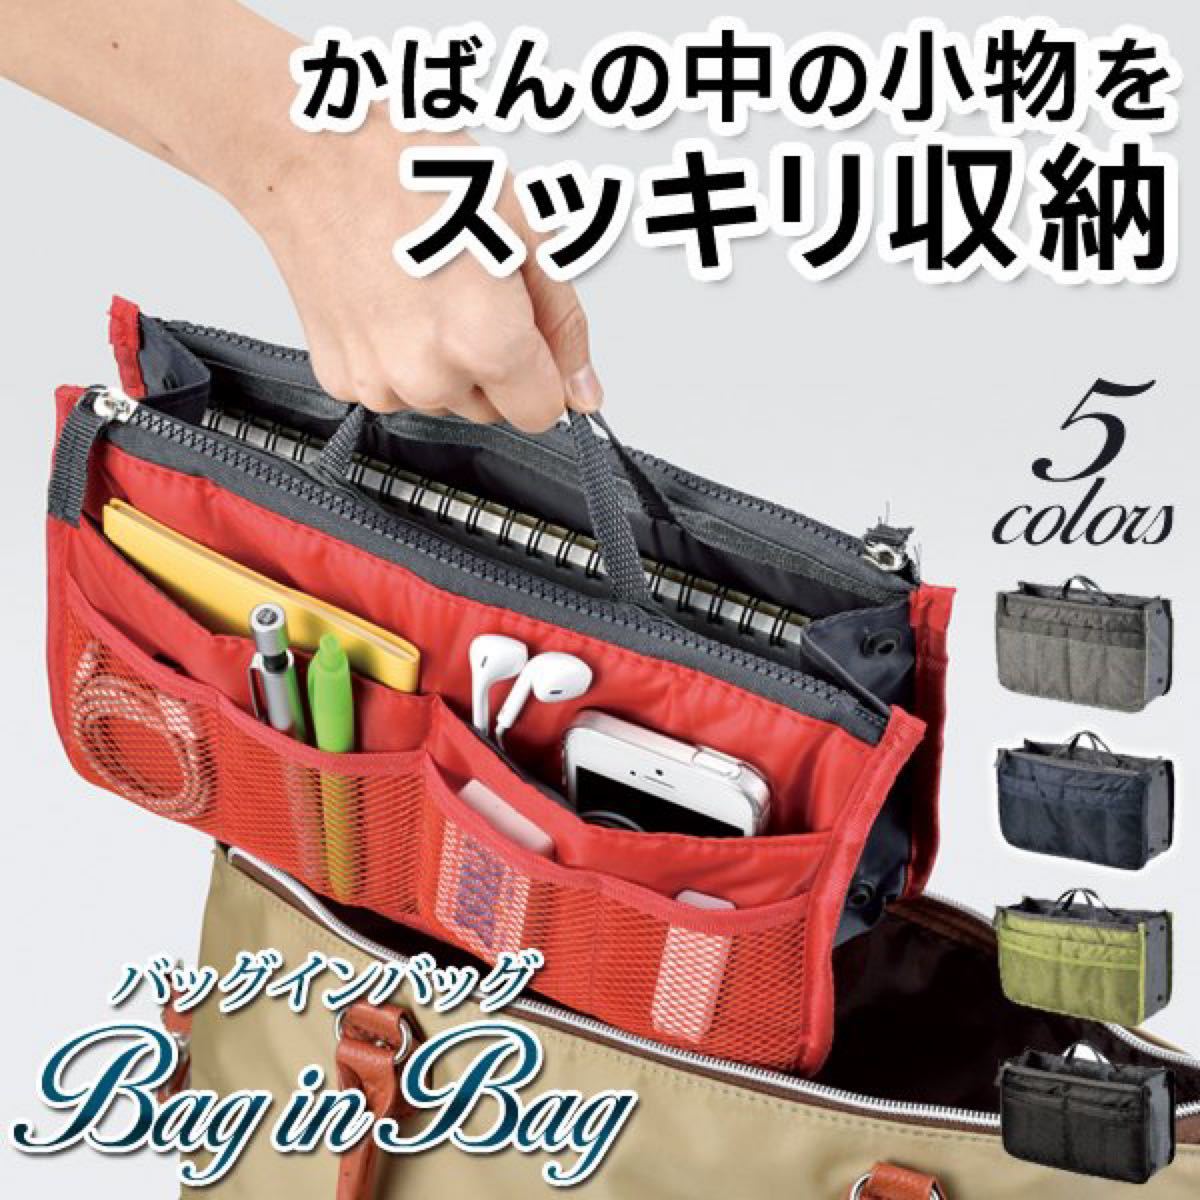 【新品未使用】バッグインバッグ かばんの中を整理整頓インナーバッグ/収納ポケット10個搭載/男女兼用 グリーン